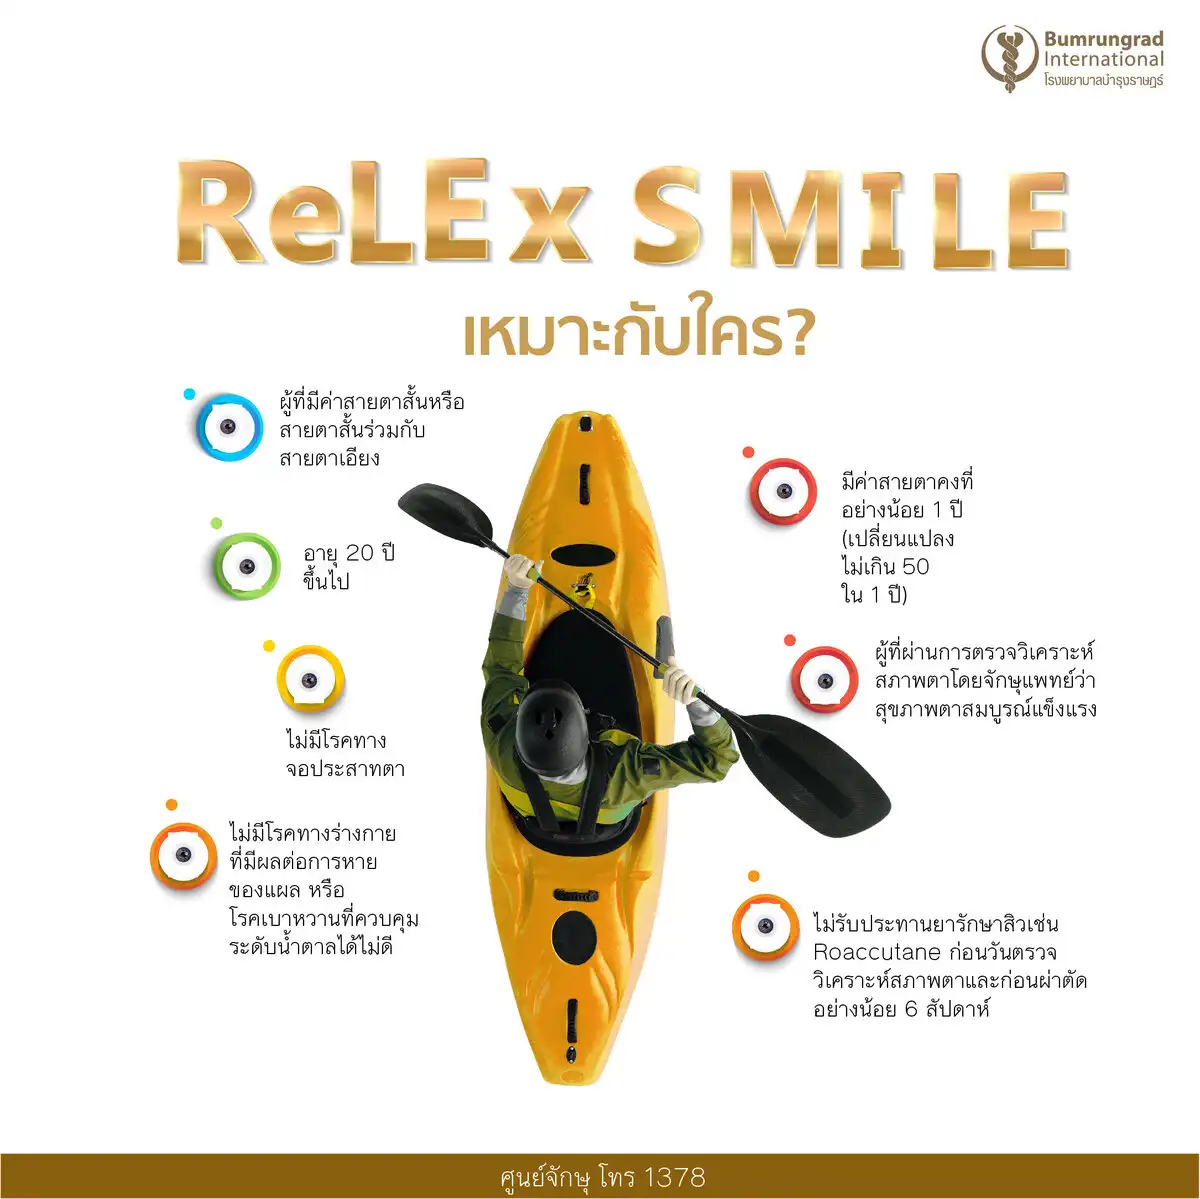 บำรุงราษฎร์ ชู ReLEx SMILE เทคโนโลยีแก้สายตาสั้นและเอียง ไร้ใบมีด แผลเล็ก หายเร็ว HealthServ